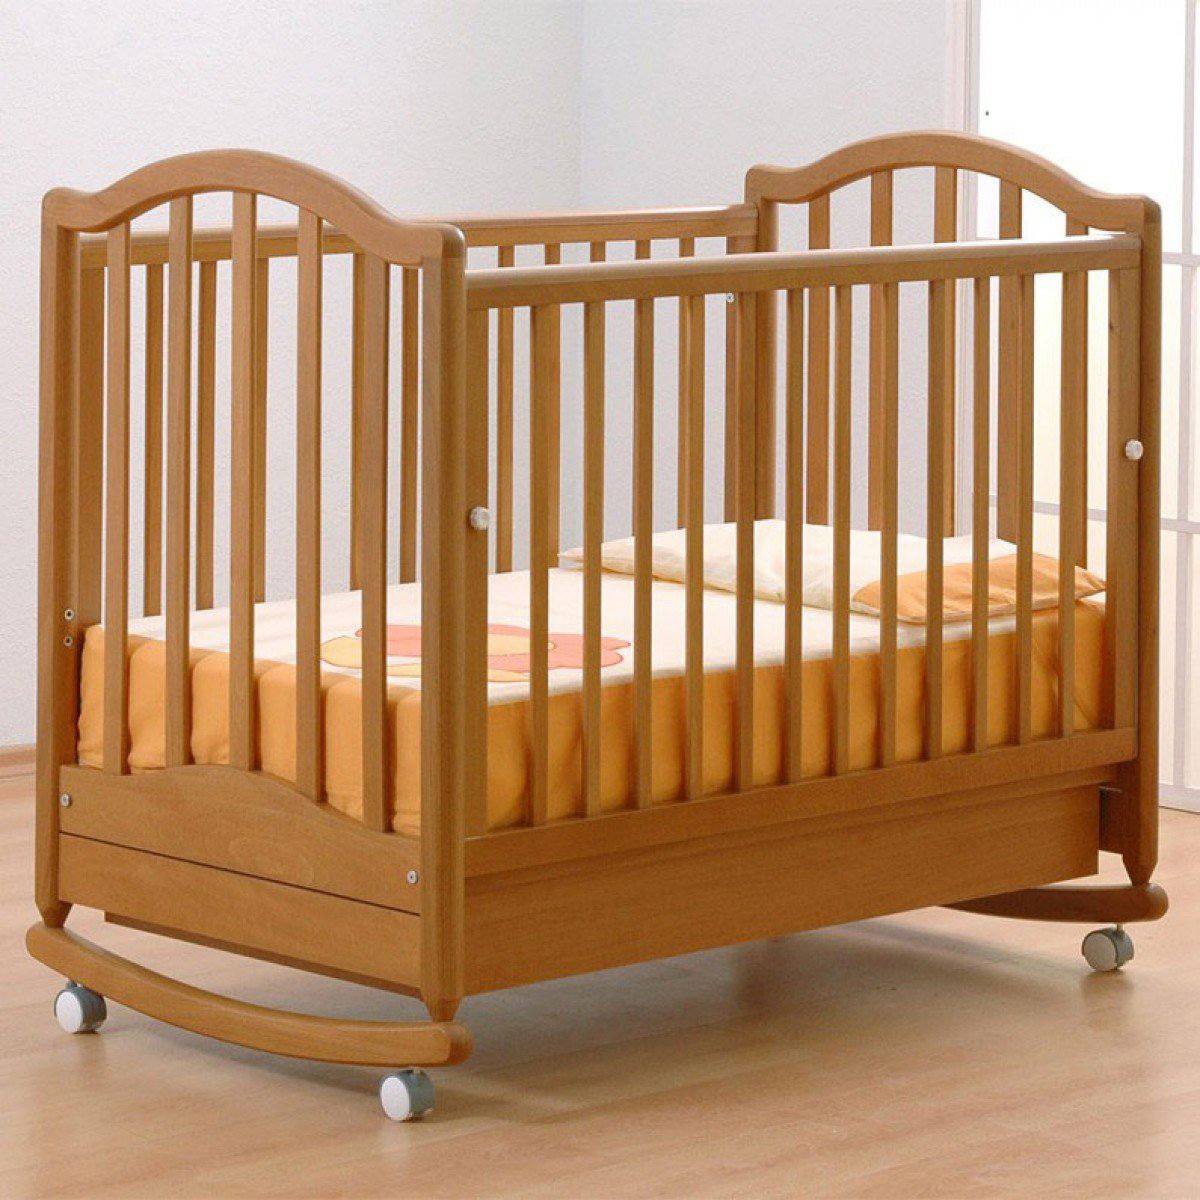 Помогите купить кроватку для малыша.